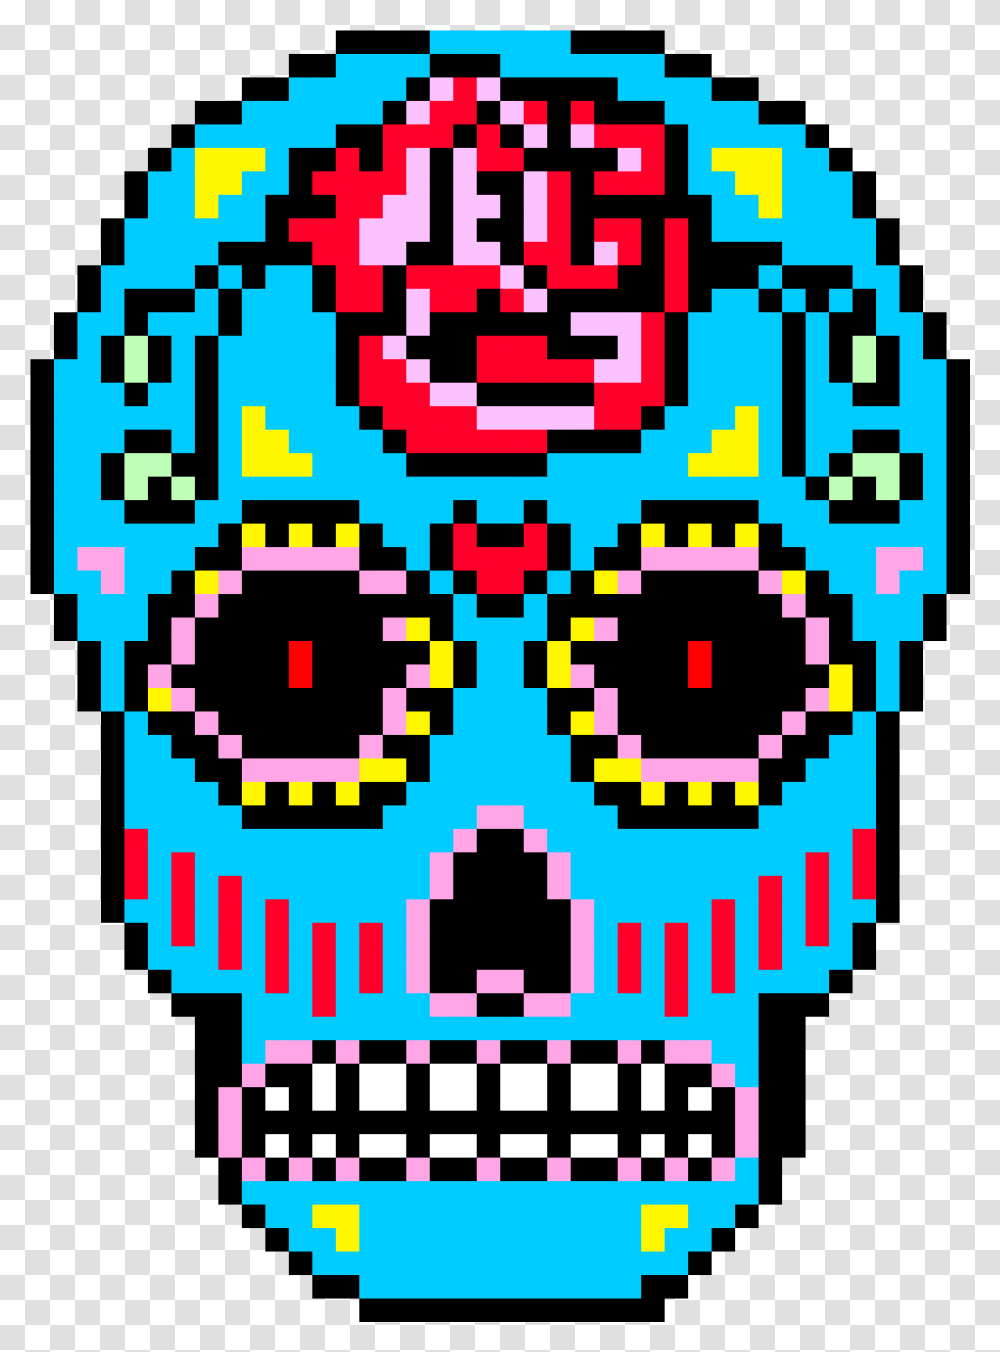 Sugar Skull Pixel Art Dessin Pixel De Tete De Mort, QR Code, Pac Man Transparent Png